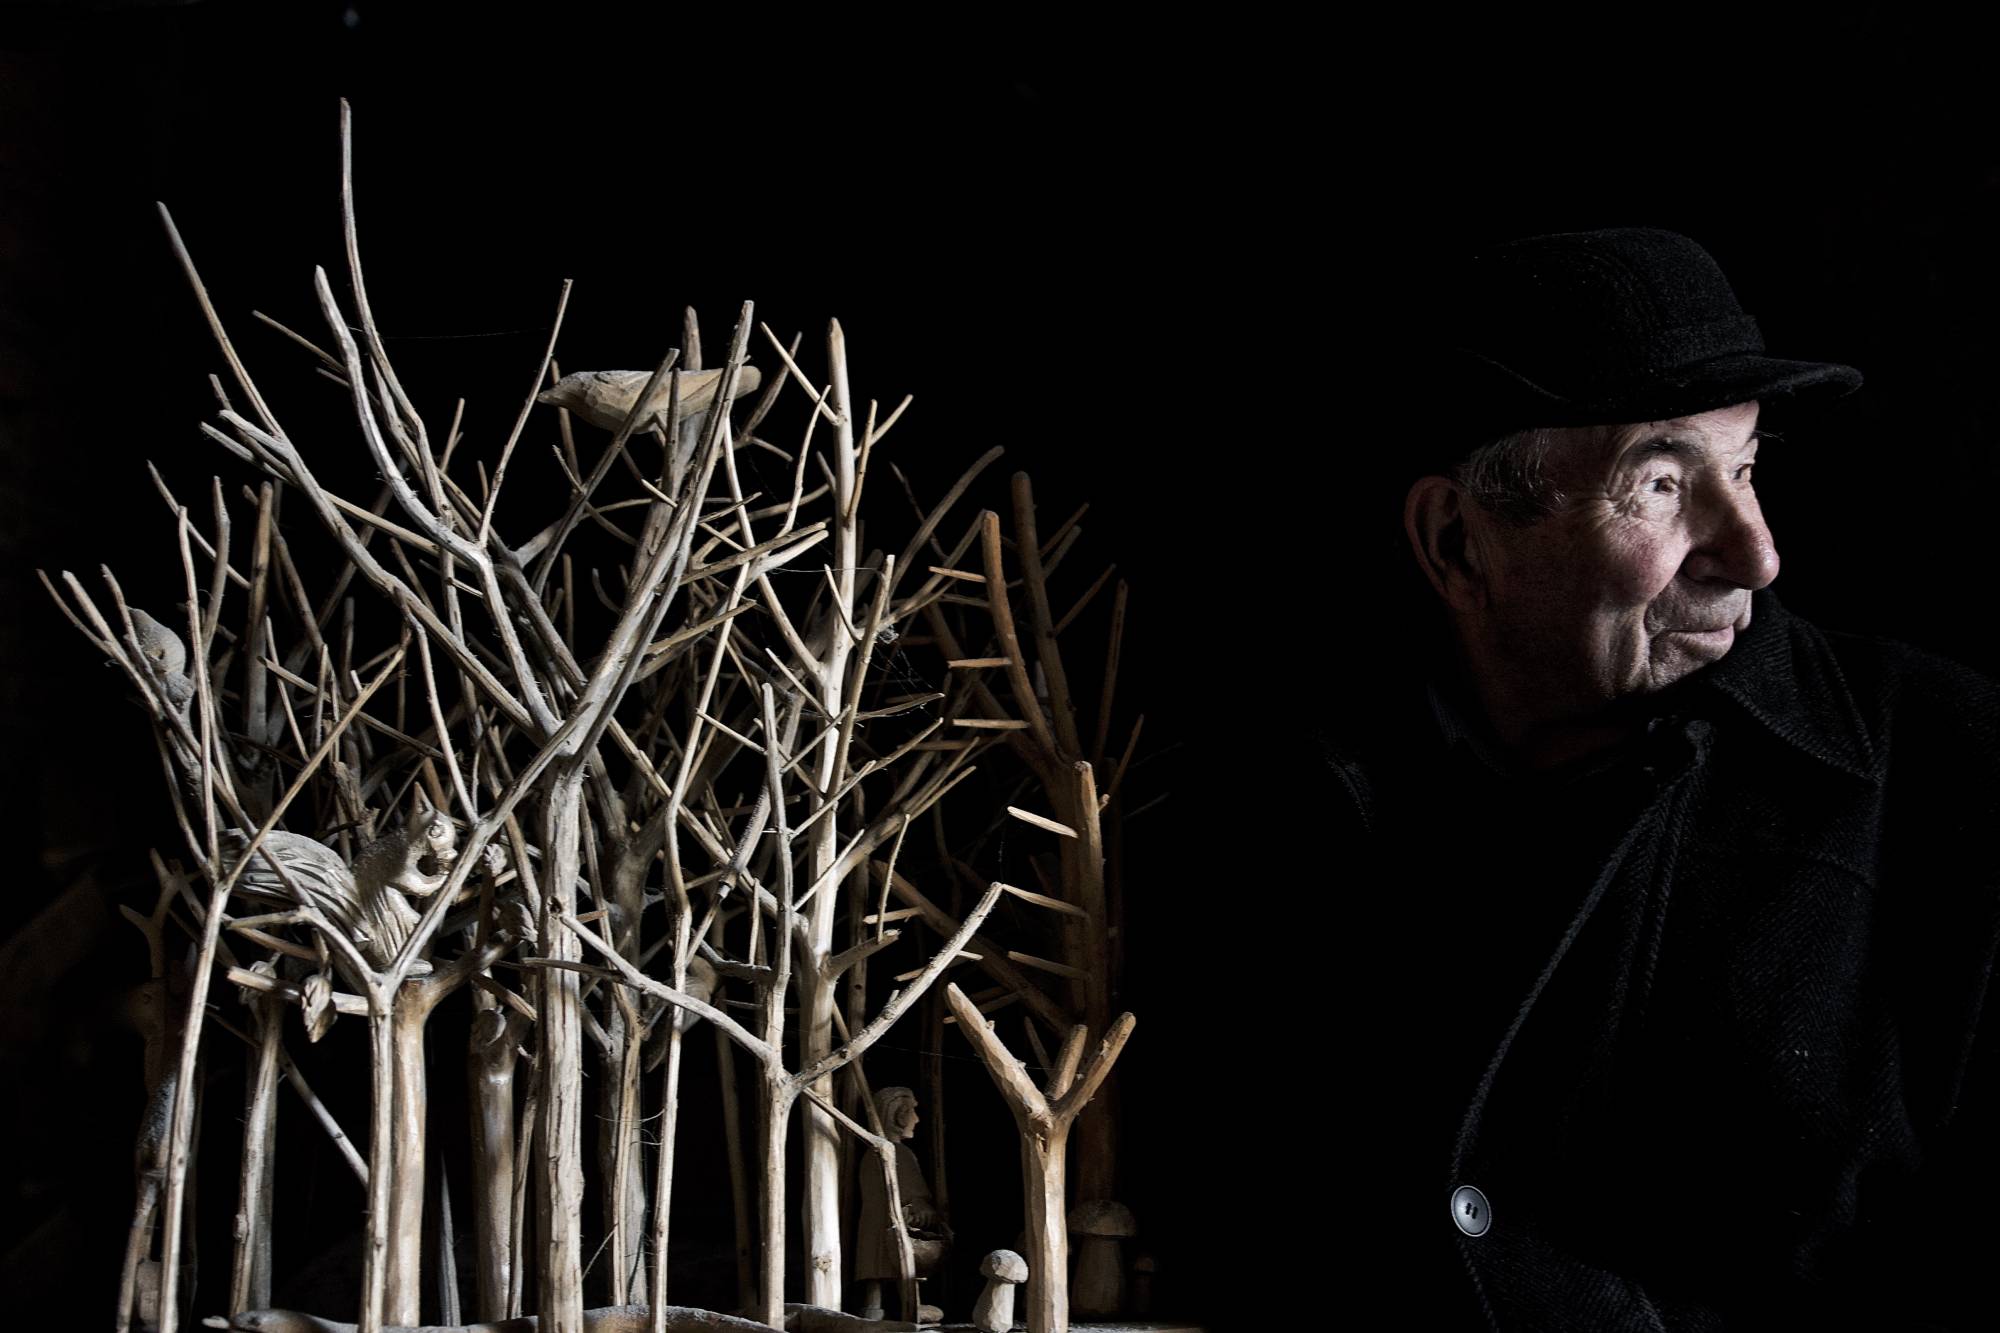 Starszy mężczyzna ubrany w czarny płaszcz stoi koło sztucznych drzew. Otacza go czarne tło.